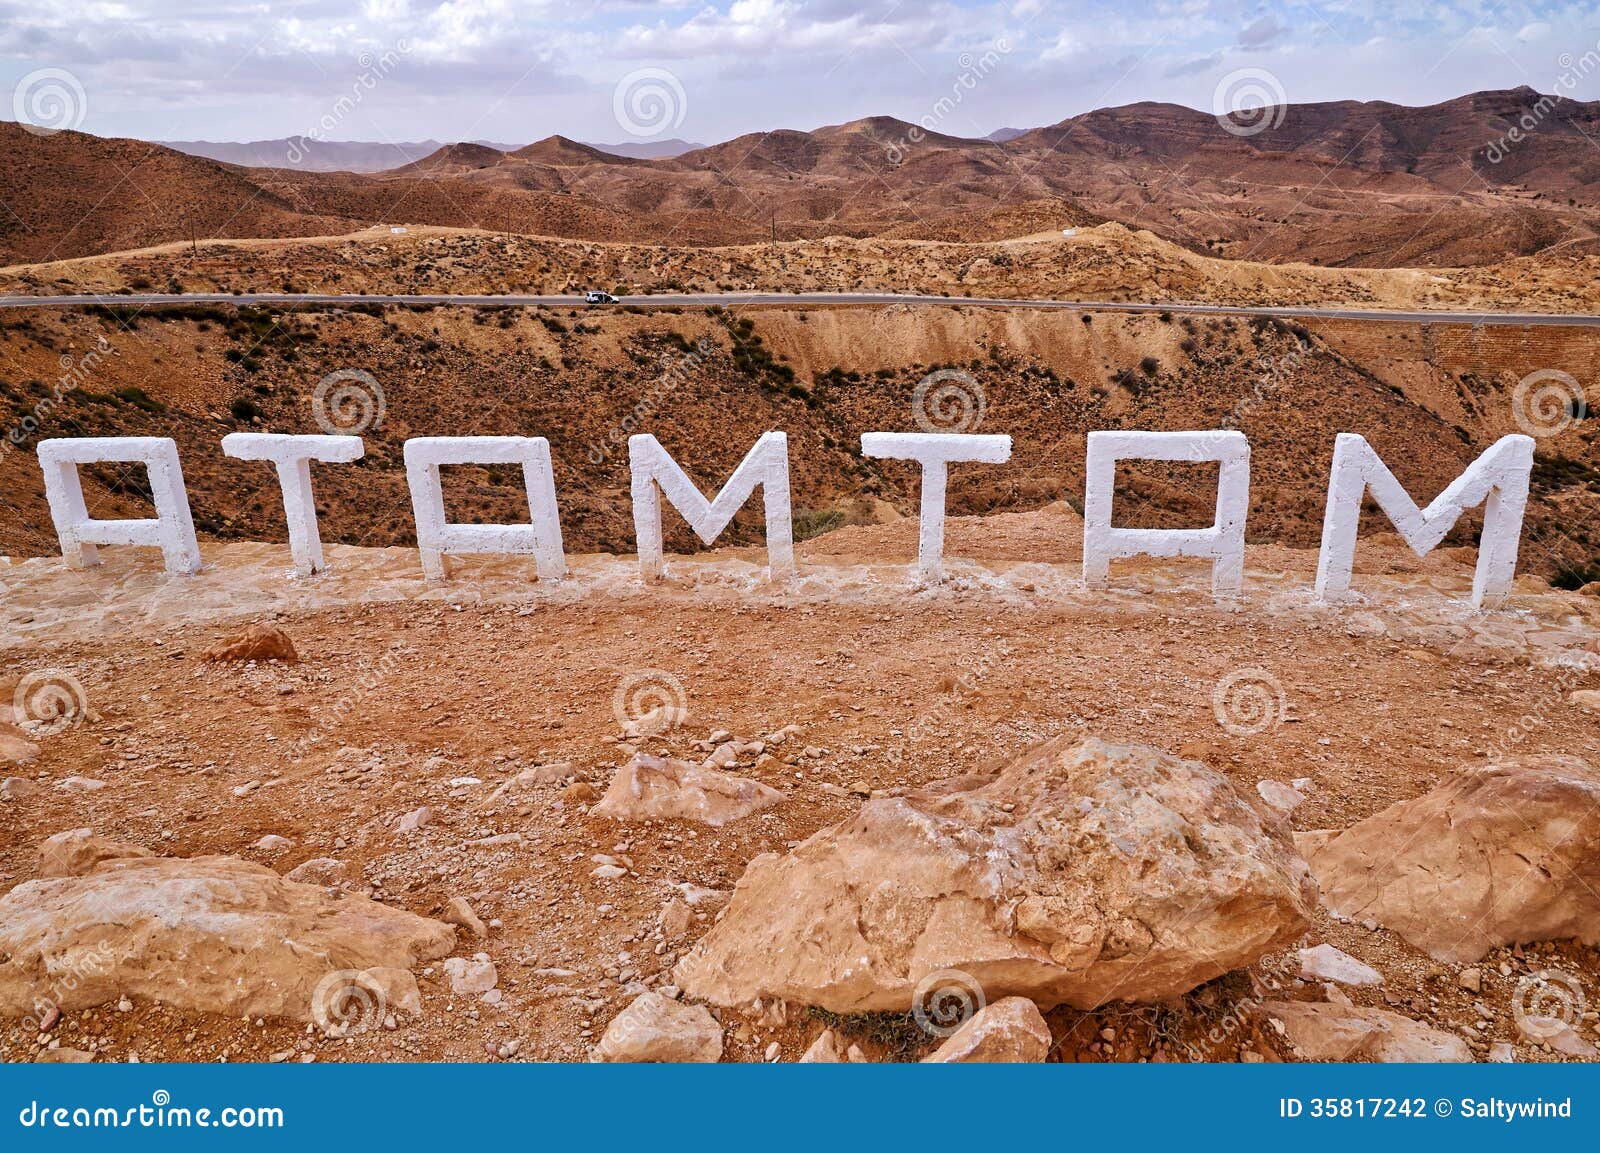 Vue arrière de signe de ville de Matmata avec le paysage rocheux et les montagnes de désert à l'arrière-plan, Tunisie.